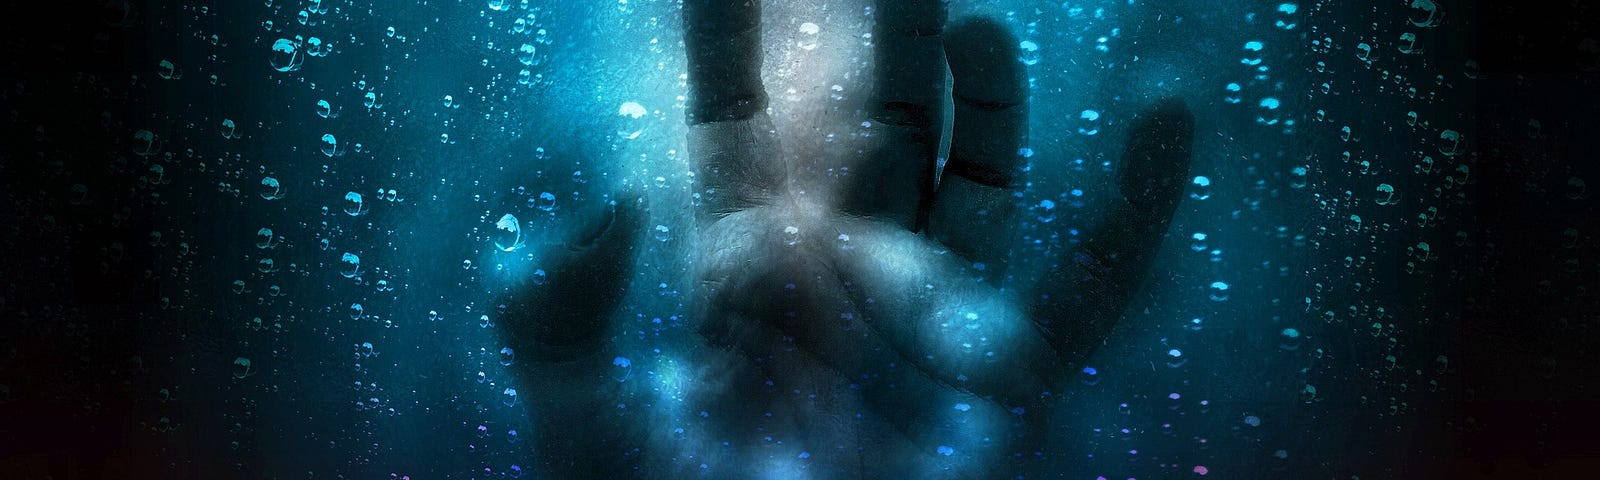 A hand shown pressing through blue glass in the rain